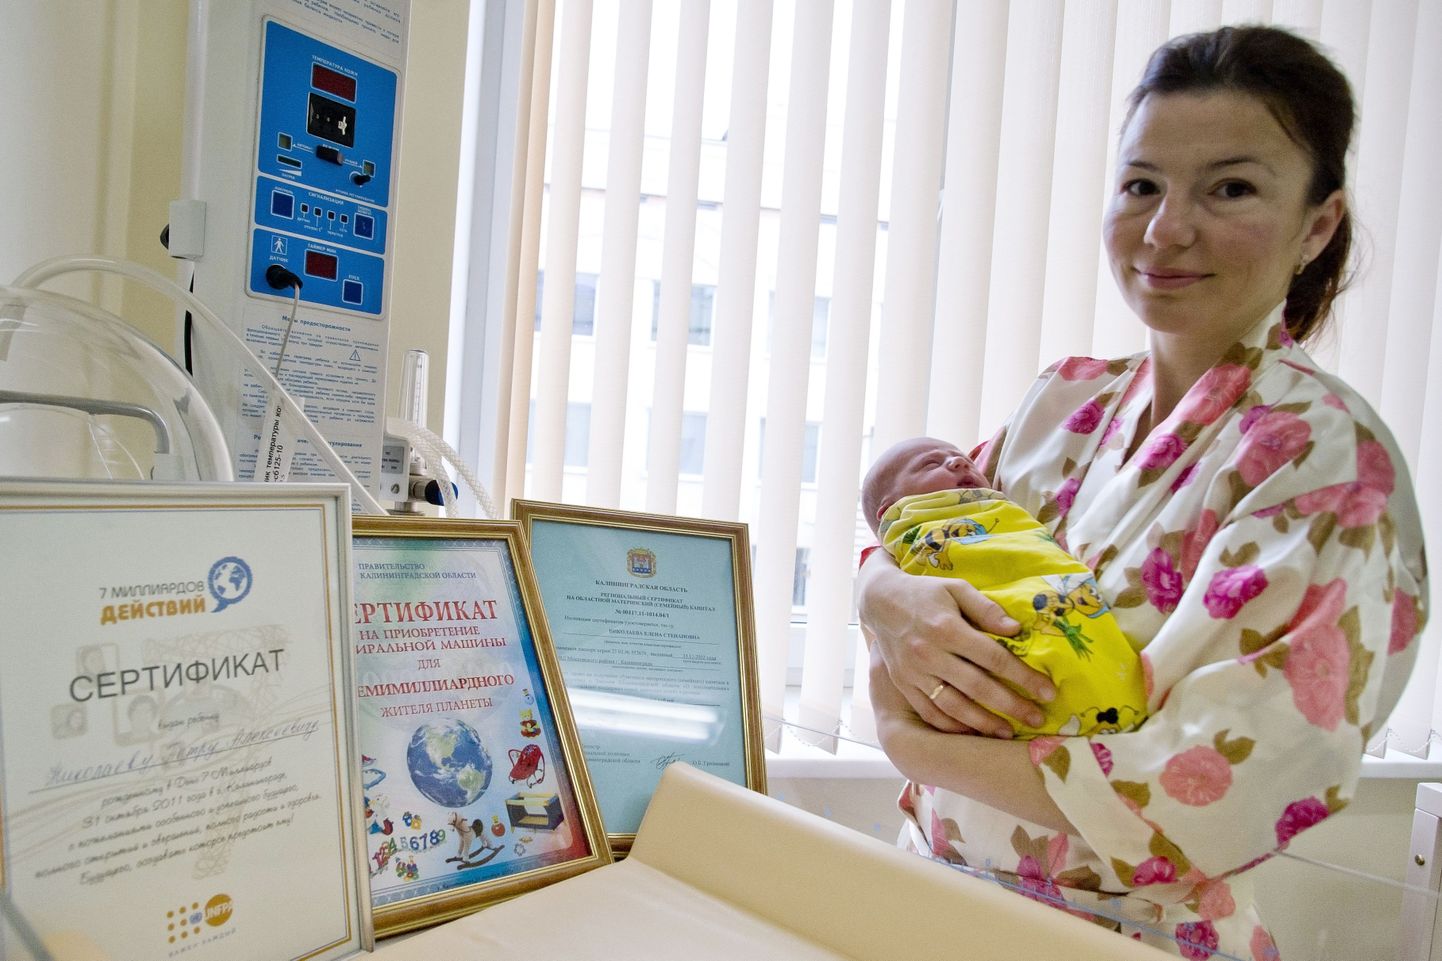 Jelena Nikolajeva koos vastsündinud Pjotriga. Pildil on erinevad sertifikaadid, mille järgi on beebi maailma seitsme miljardendas elanik.